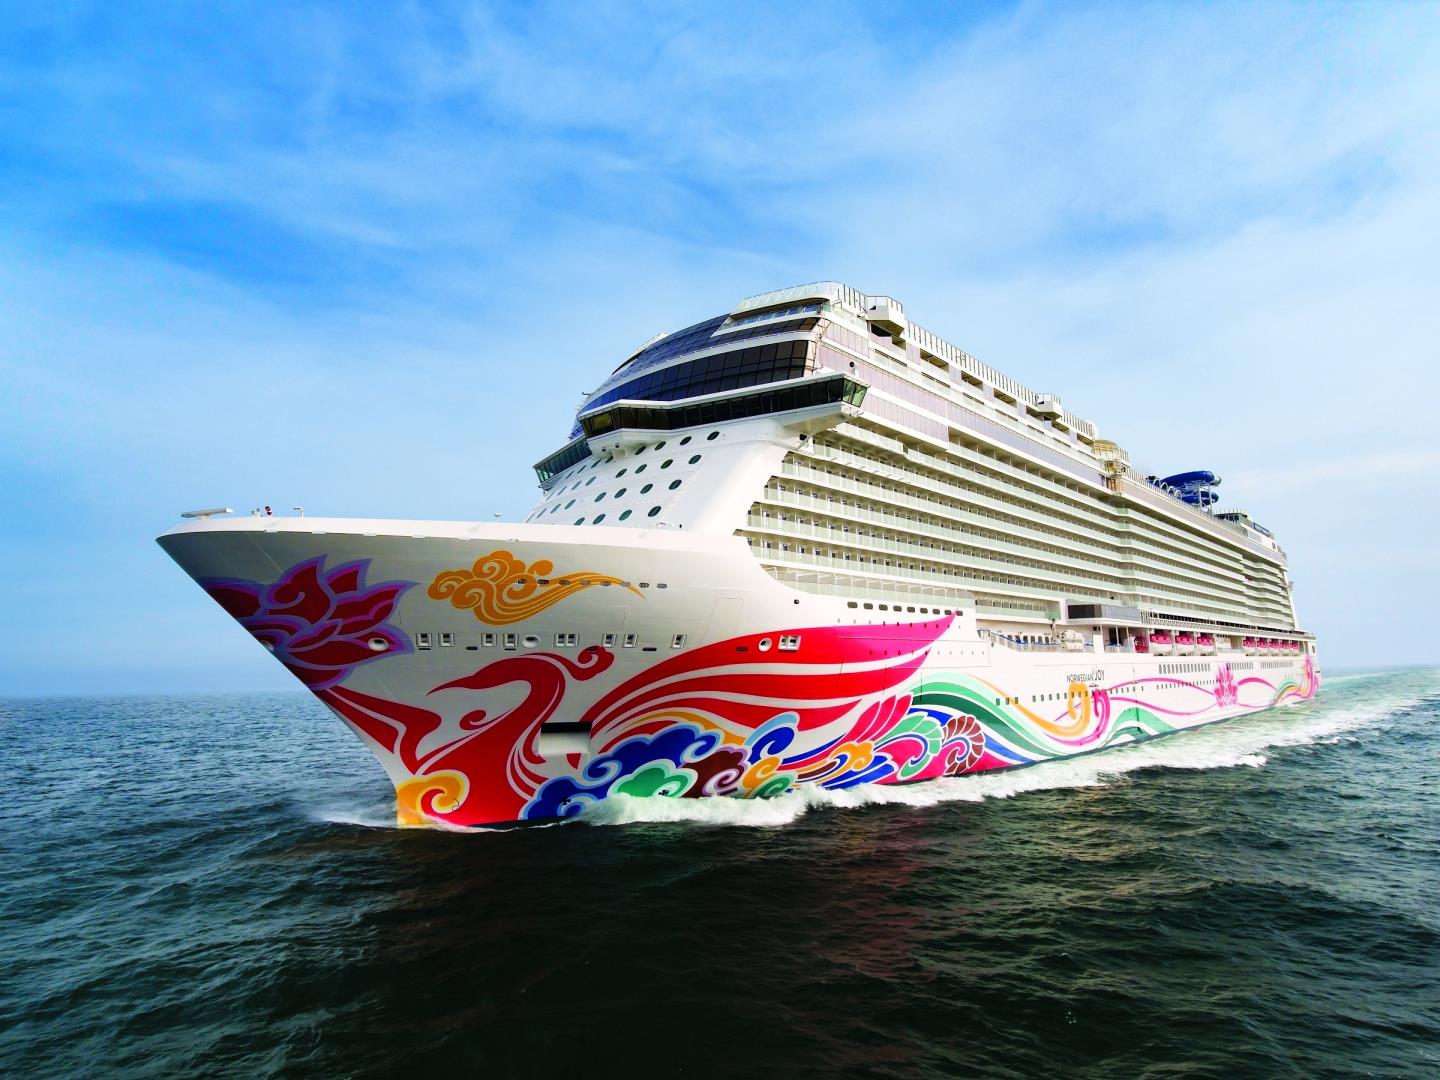 5-day Cruise to Bermuda from New York, New York on Norwegian Joy